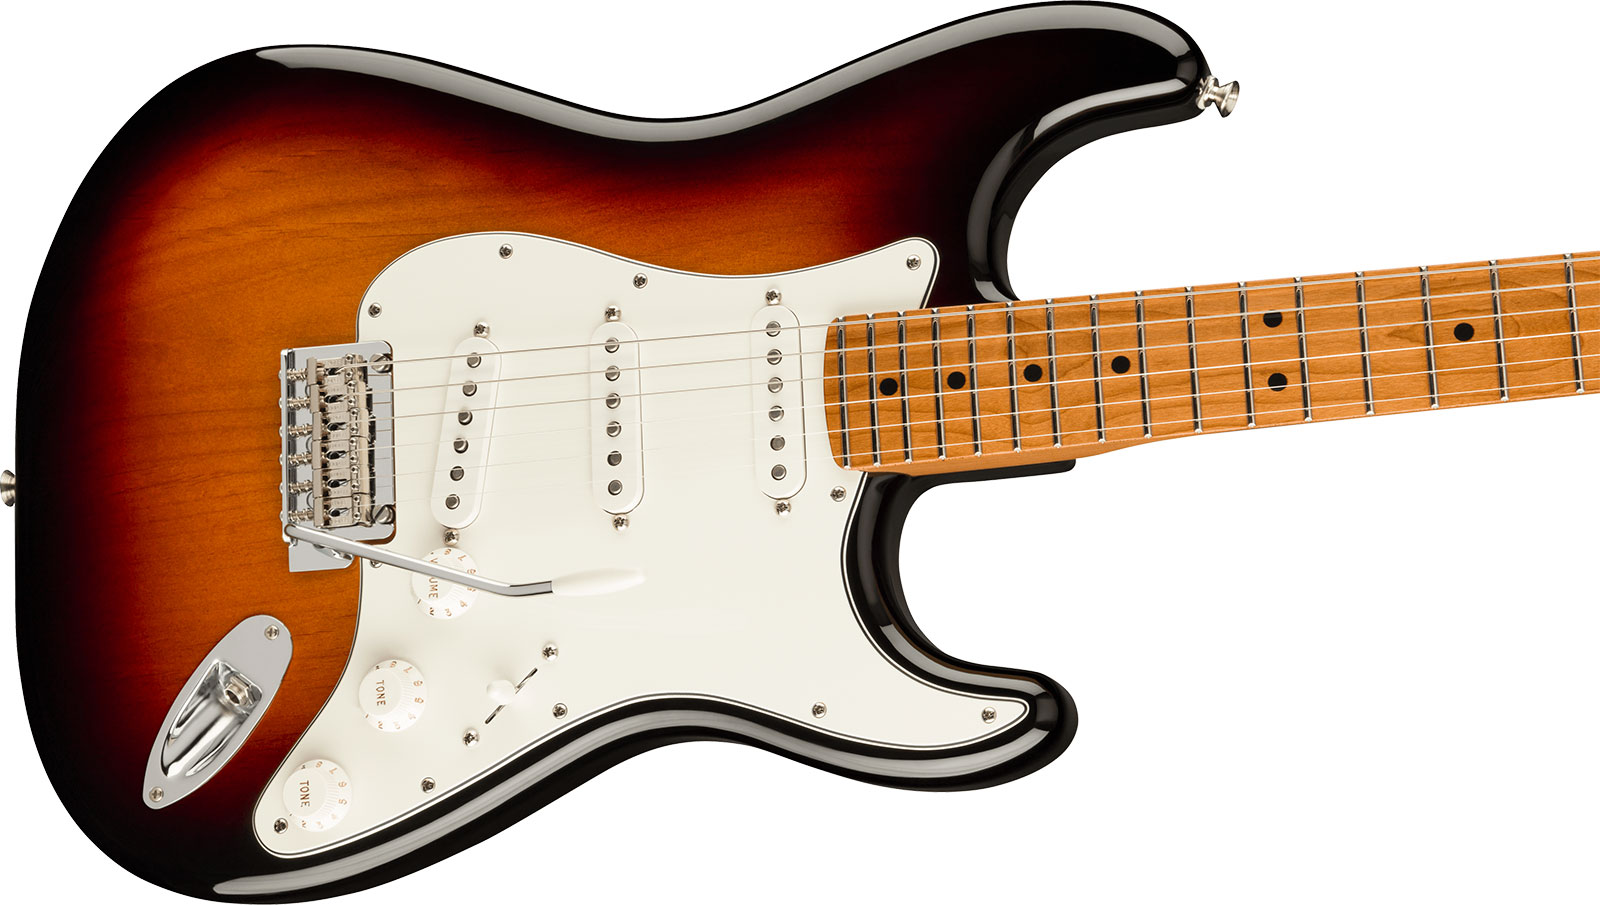 Fender Strat Player Roasted Maple Neck Ltd Mex 3s Trem Mn - 3 Color Sunburst - Str shape electric guitar - Variation 2